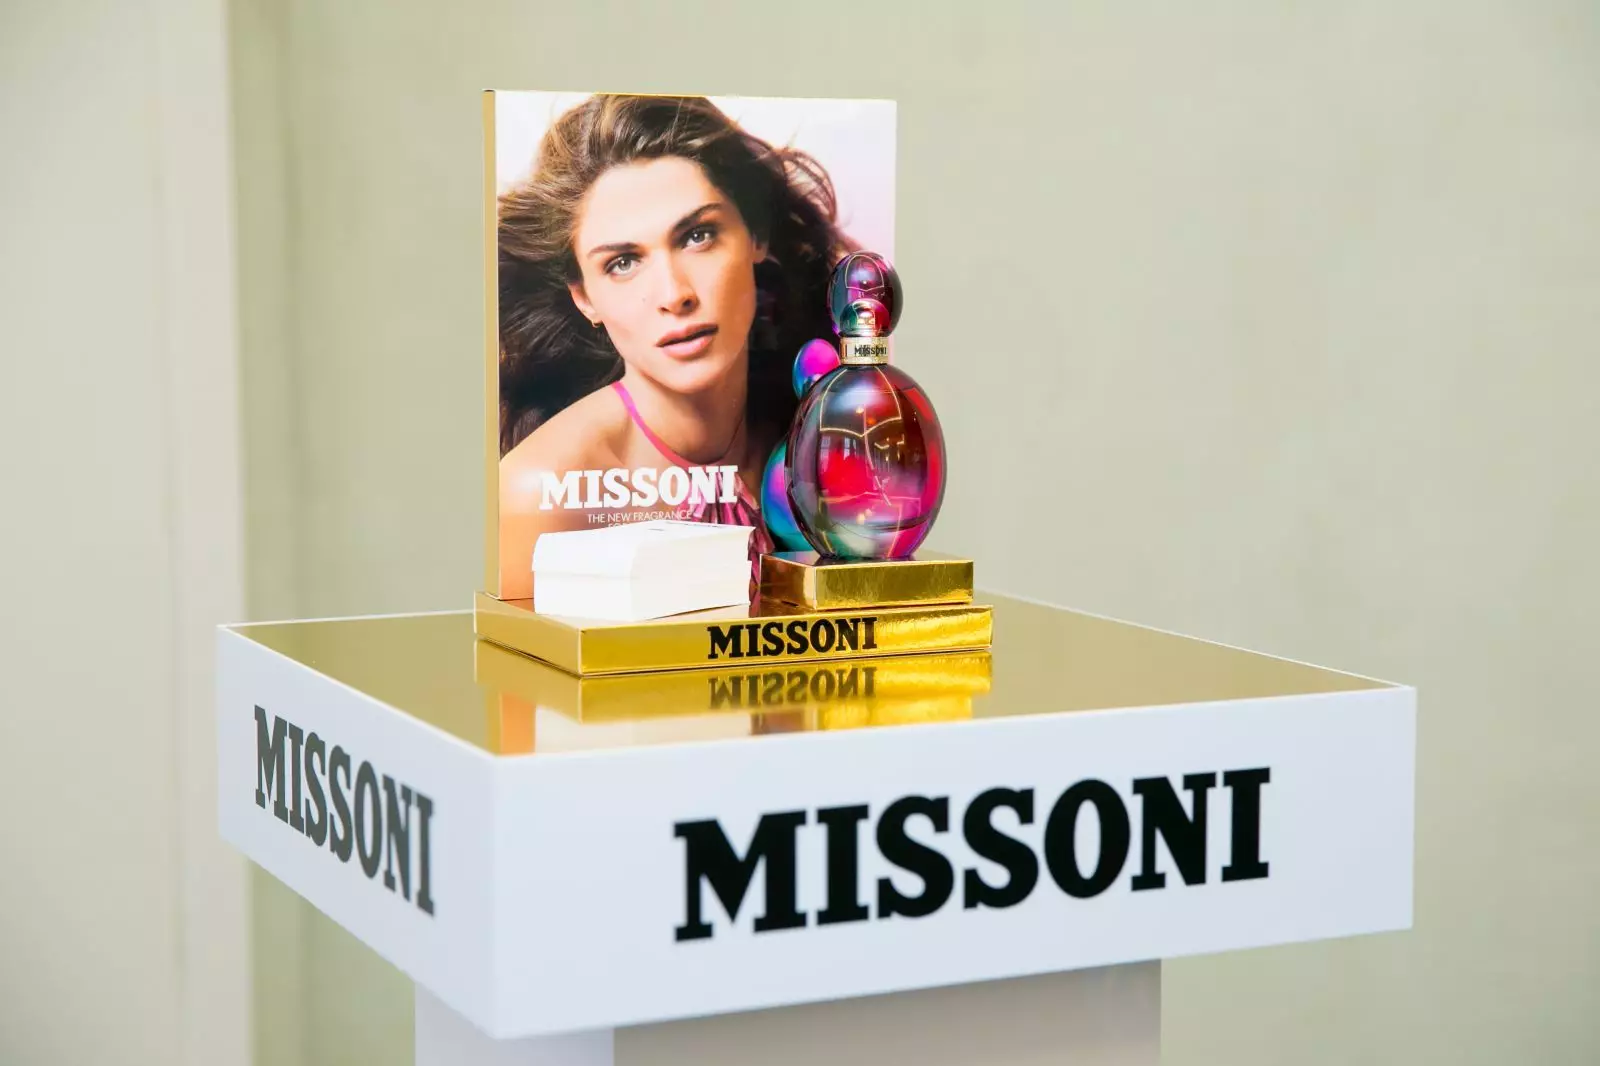 Perfumy Missoni: Parfum naliať Homme a Acqua, iné parfumy a vybavenie, Dámske a pánske chyby, Tipy pre výber 25239_8